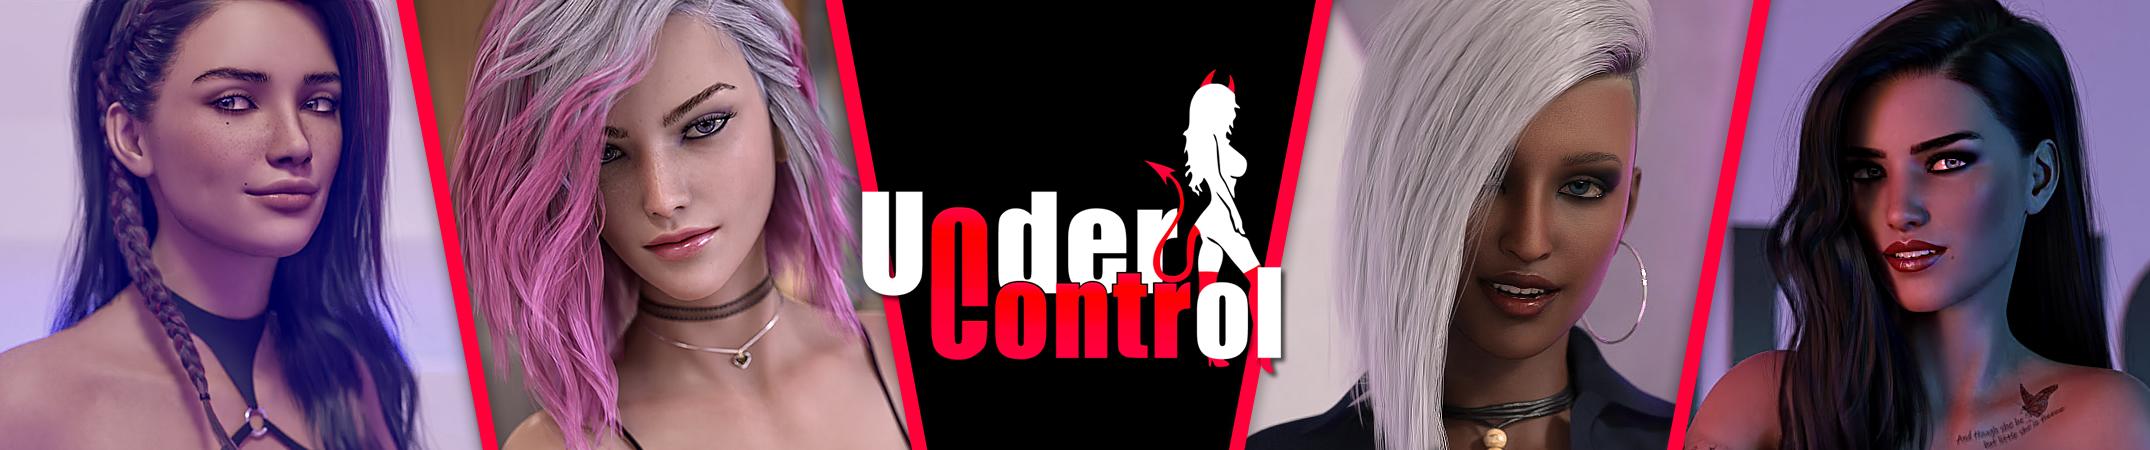 Under Control [Slusiom] Adult xxx Game Download